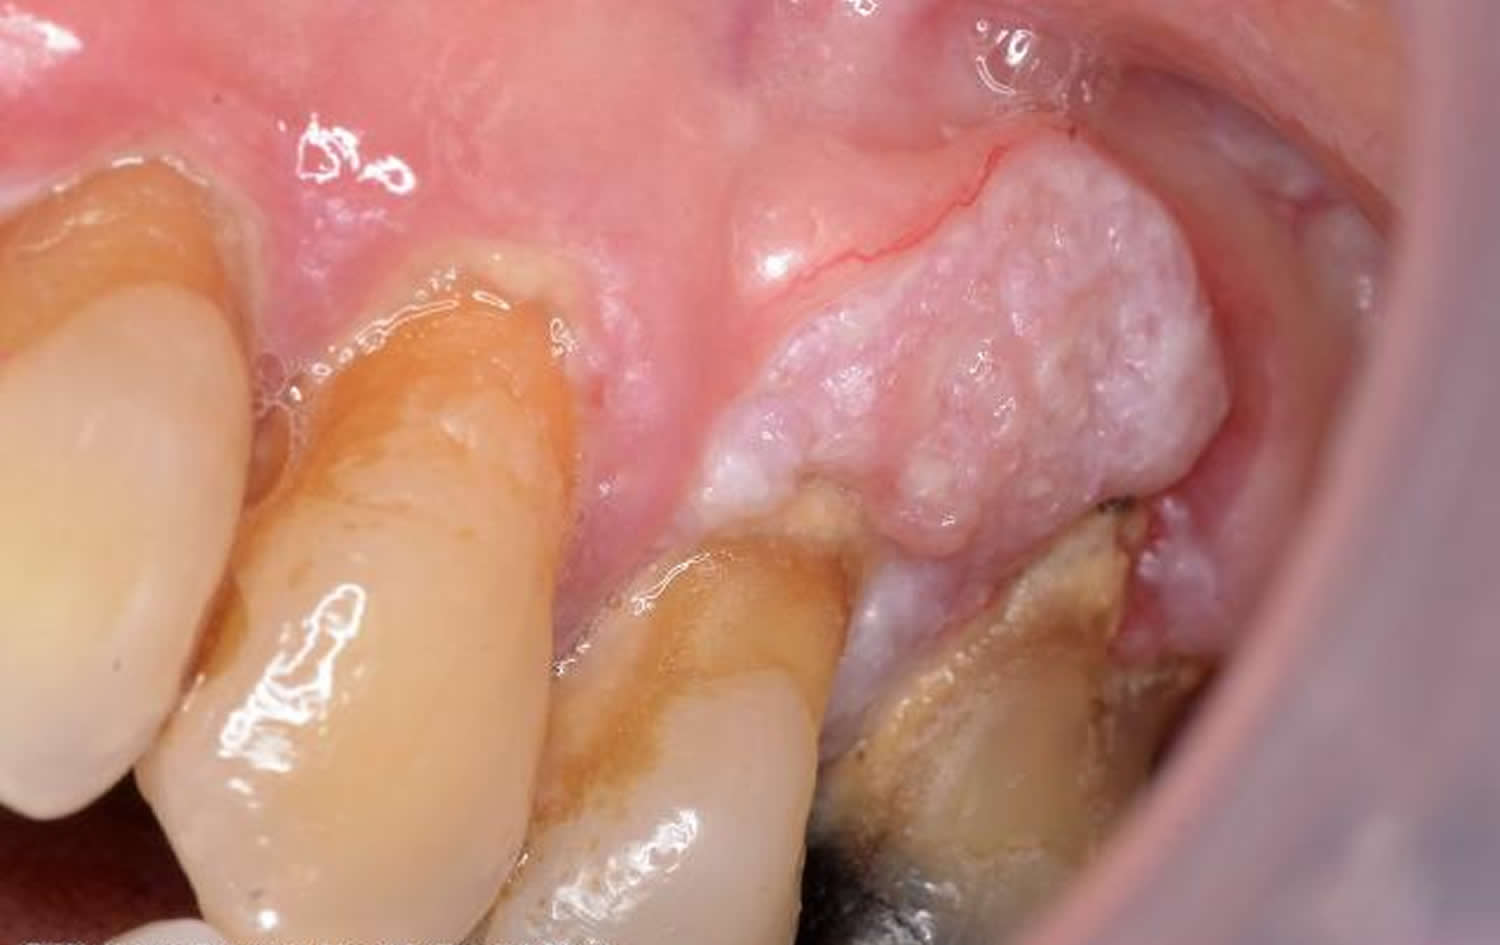 oral lichen planus cancer